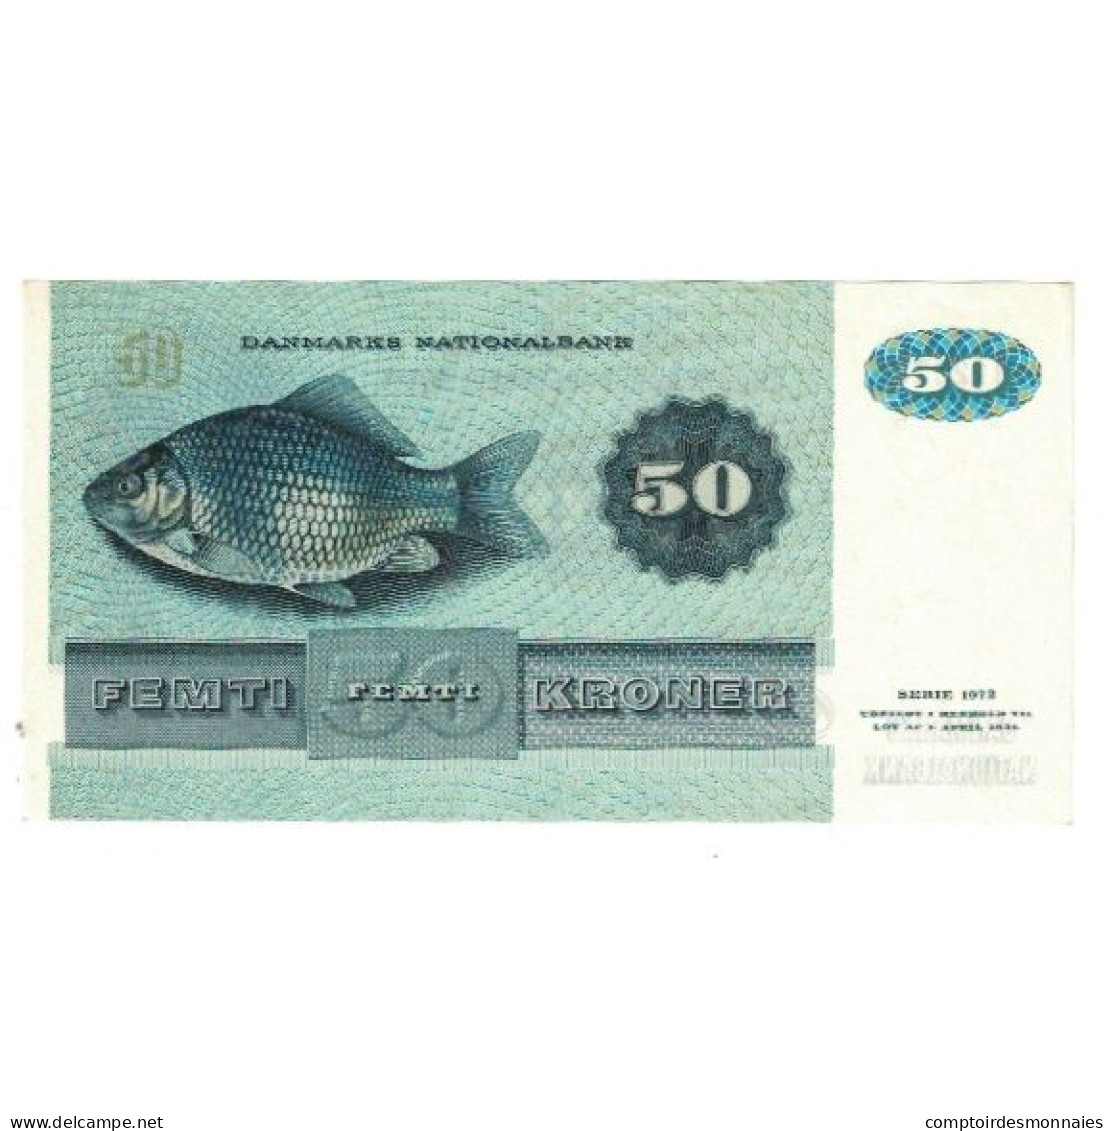 Billet, Danemark, 50 Kroner, 1972, KM:50a, TTB - Danemark